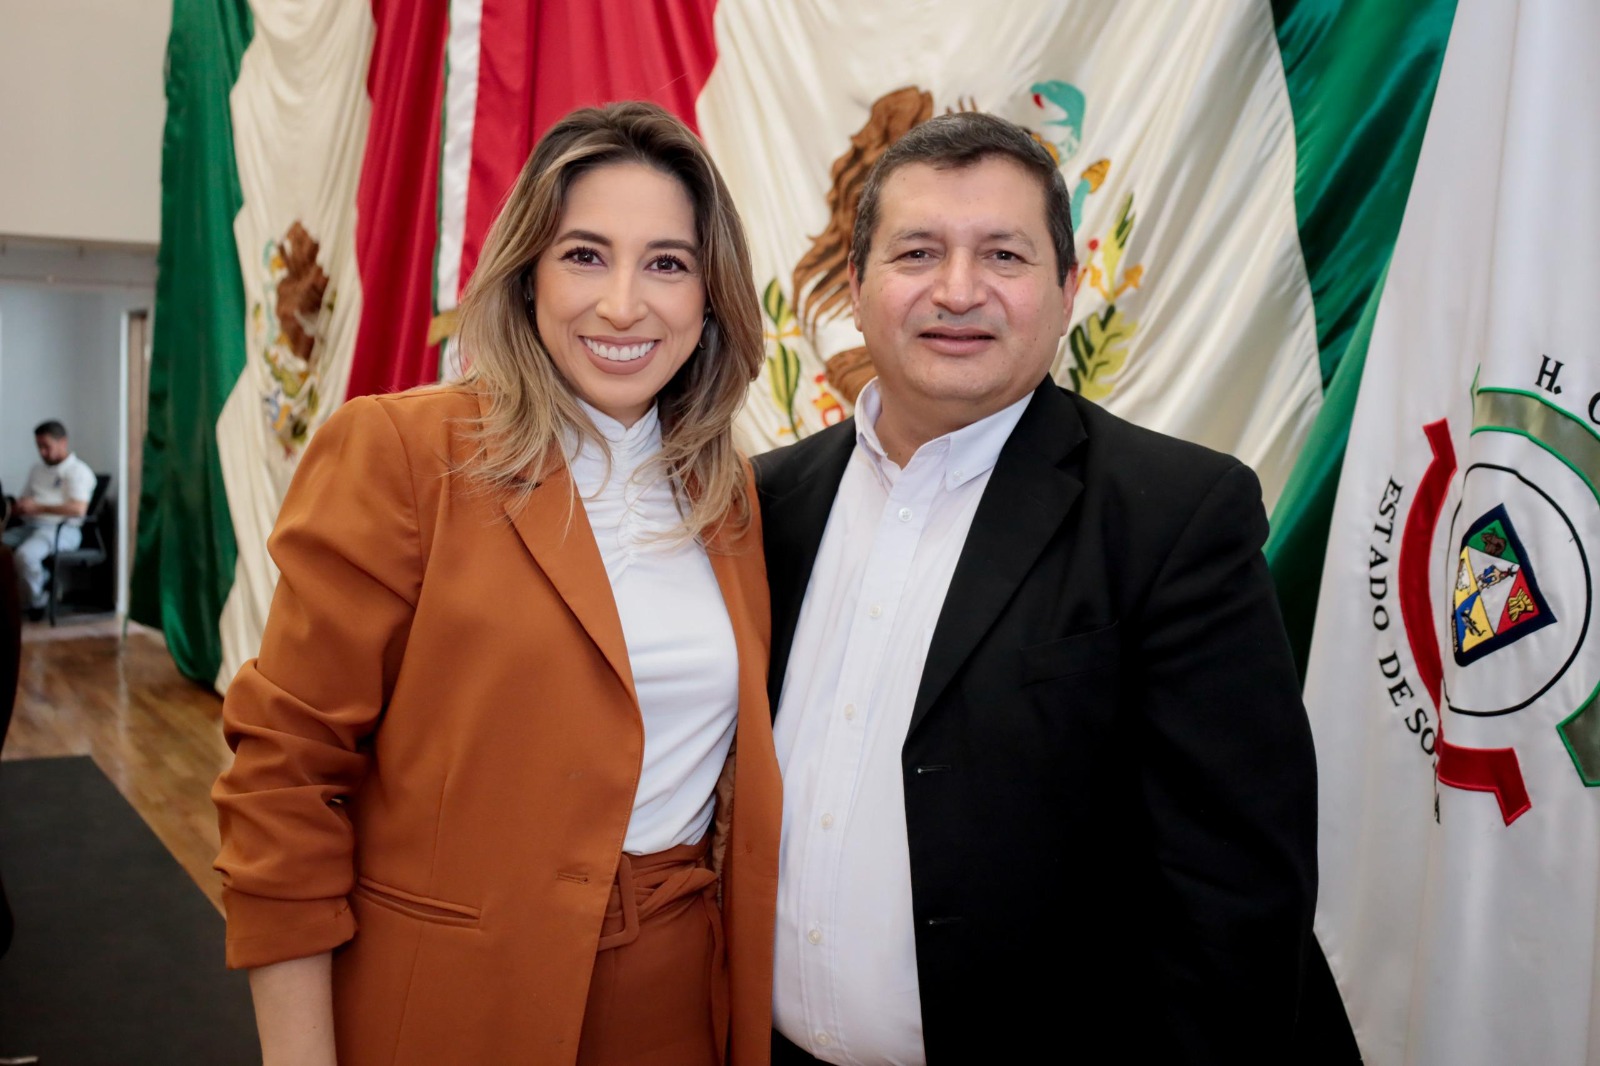 Confirma INE a Karina Zárate como candidata a diputada federal suplente